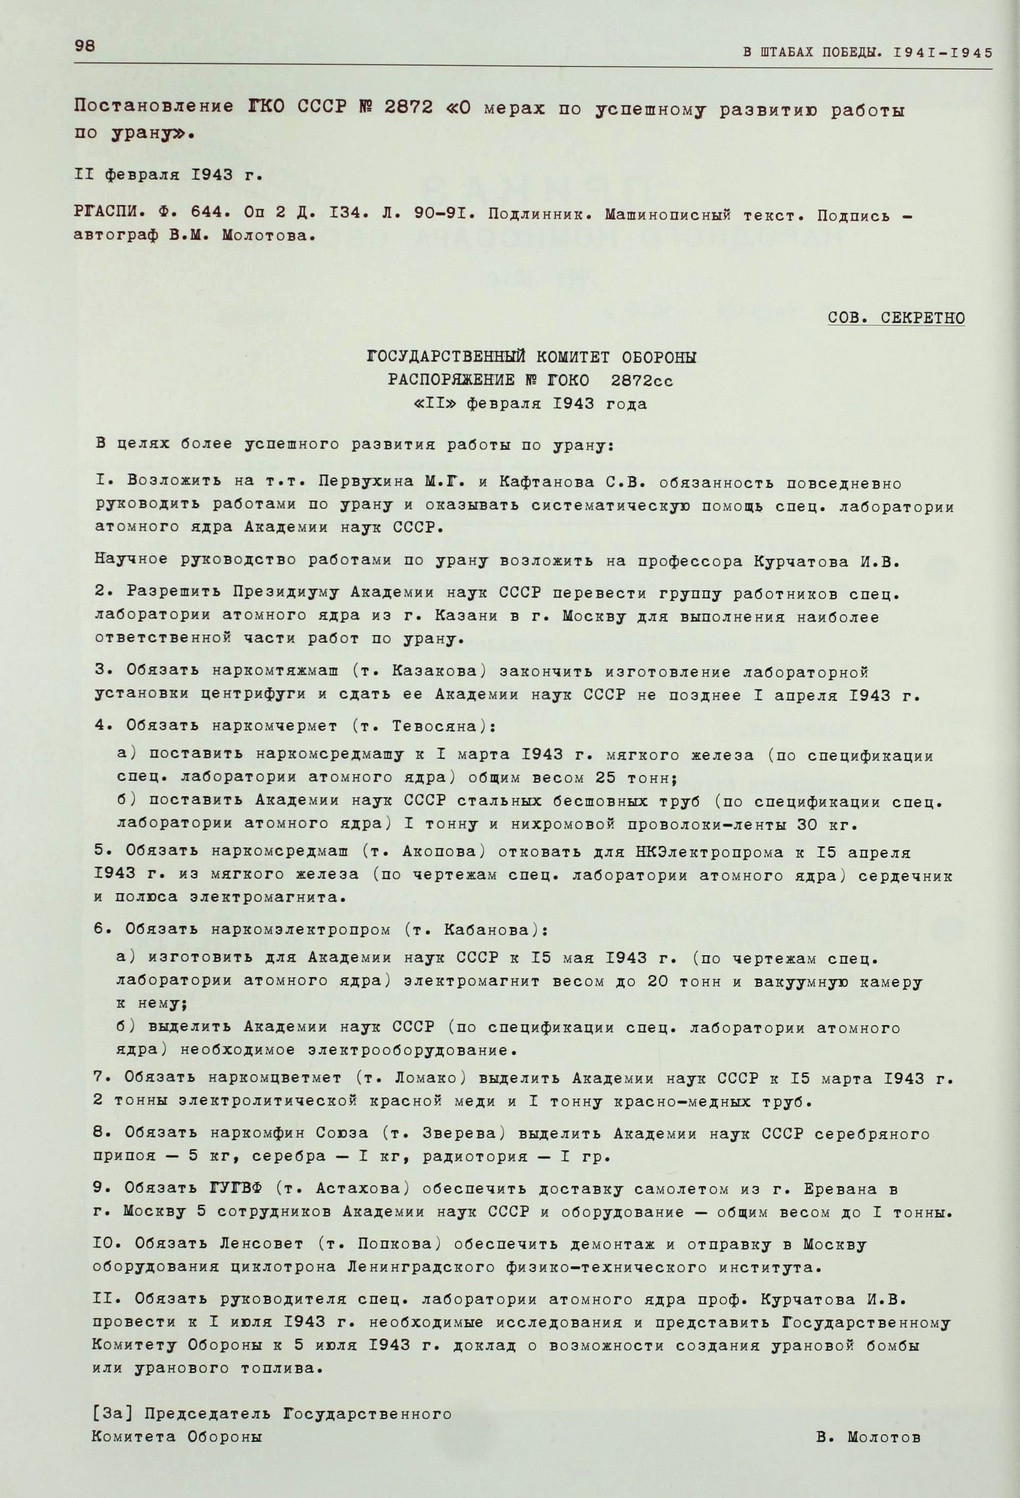 Постановление ГКО от 11 февраля 1943 года.